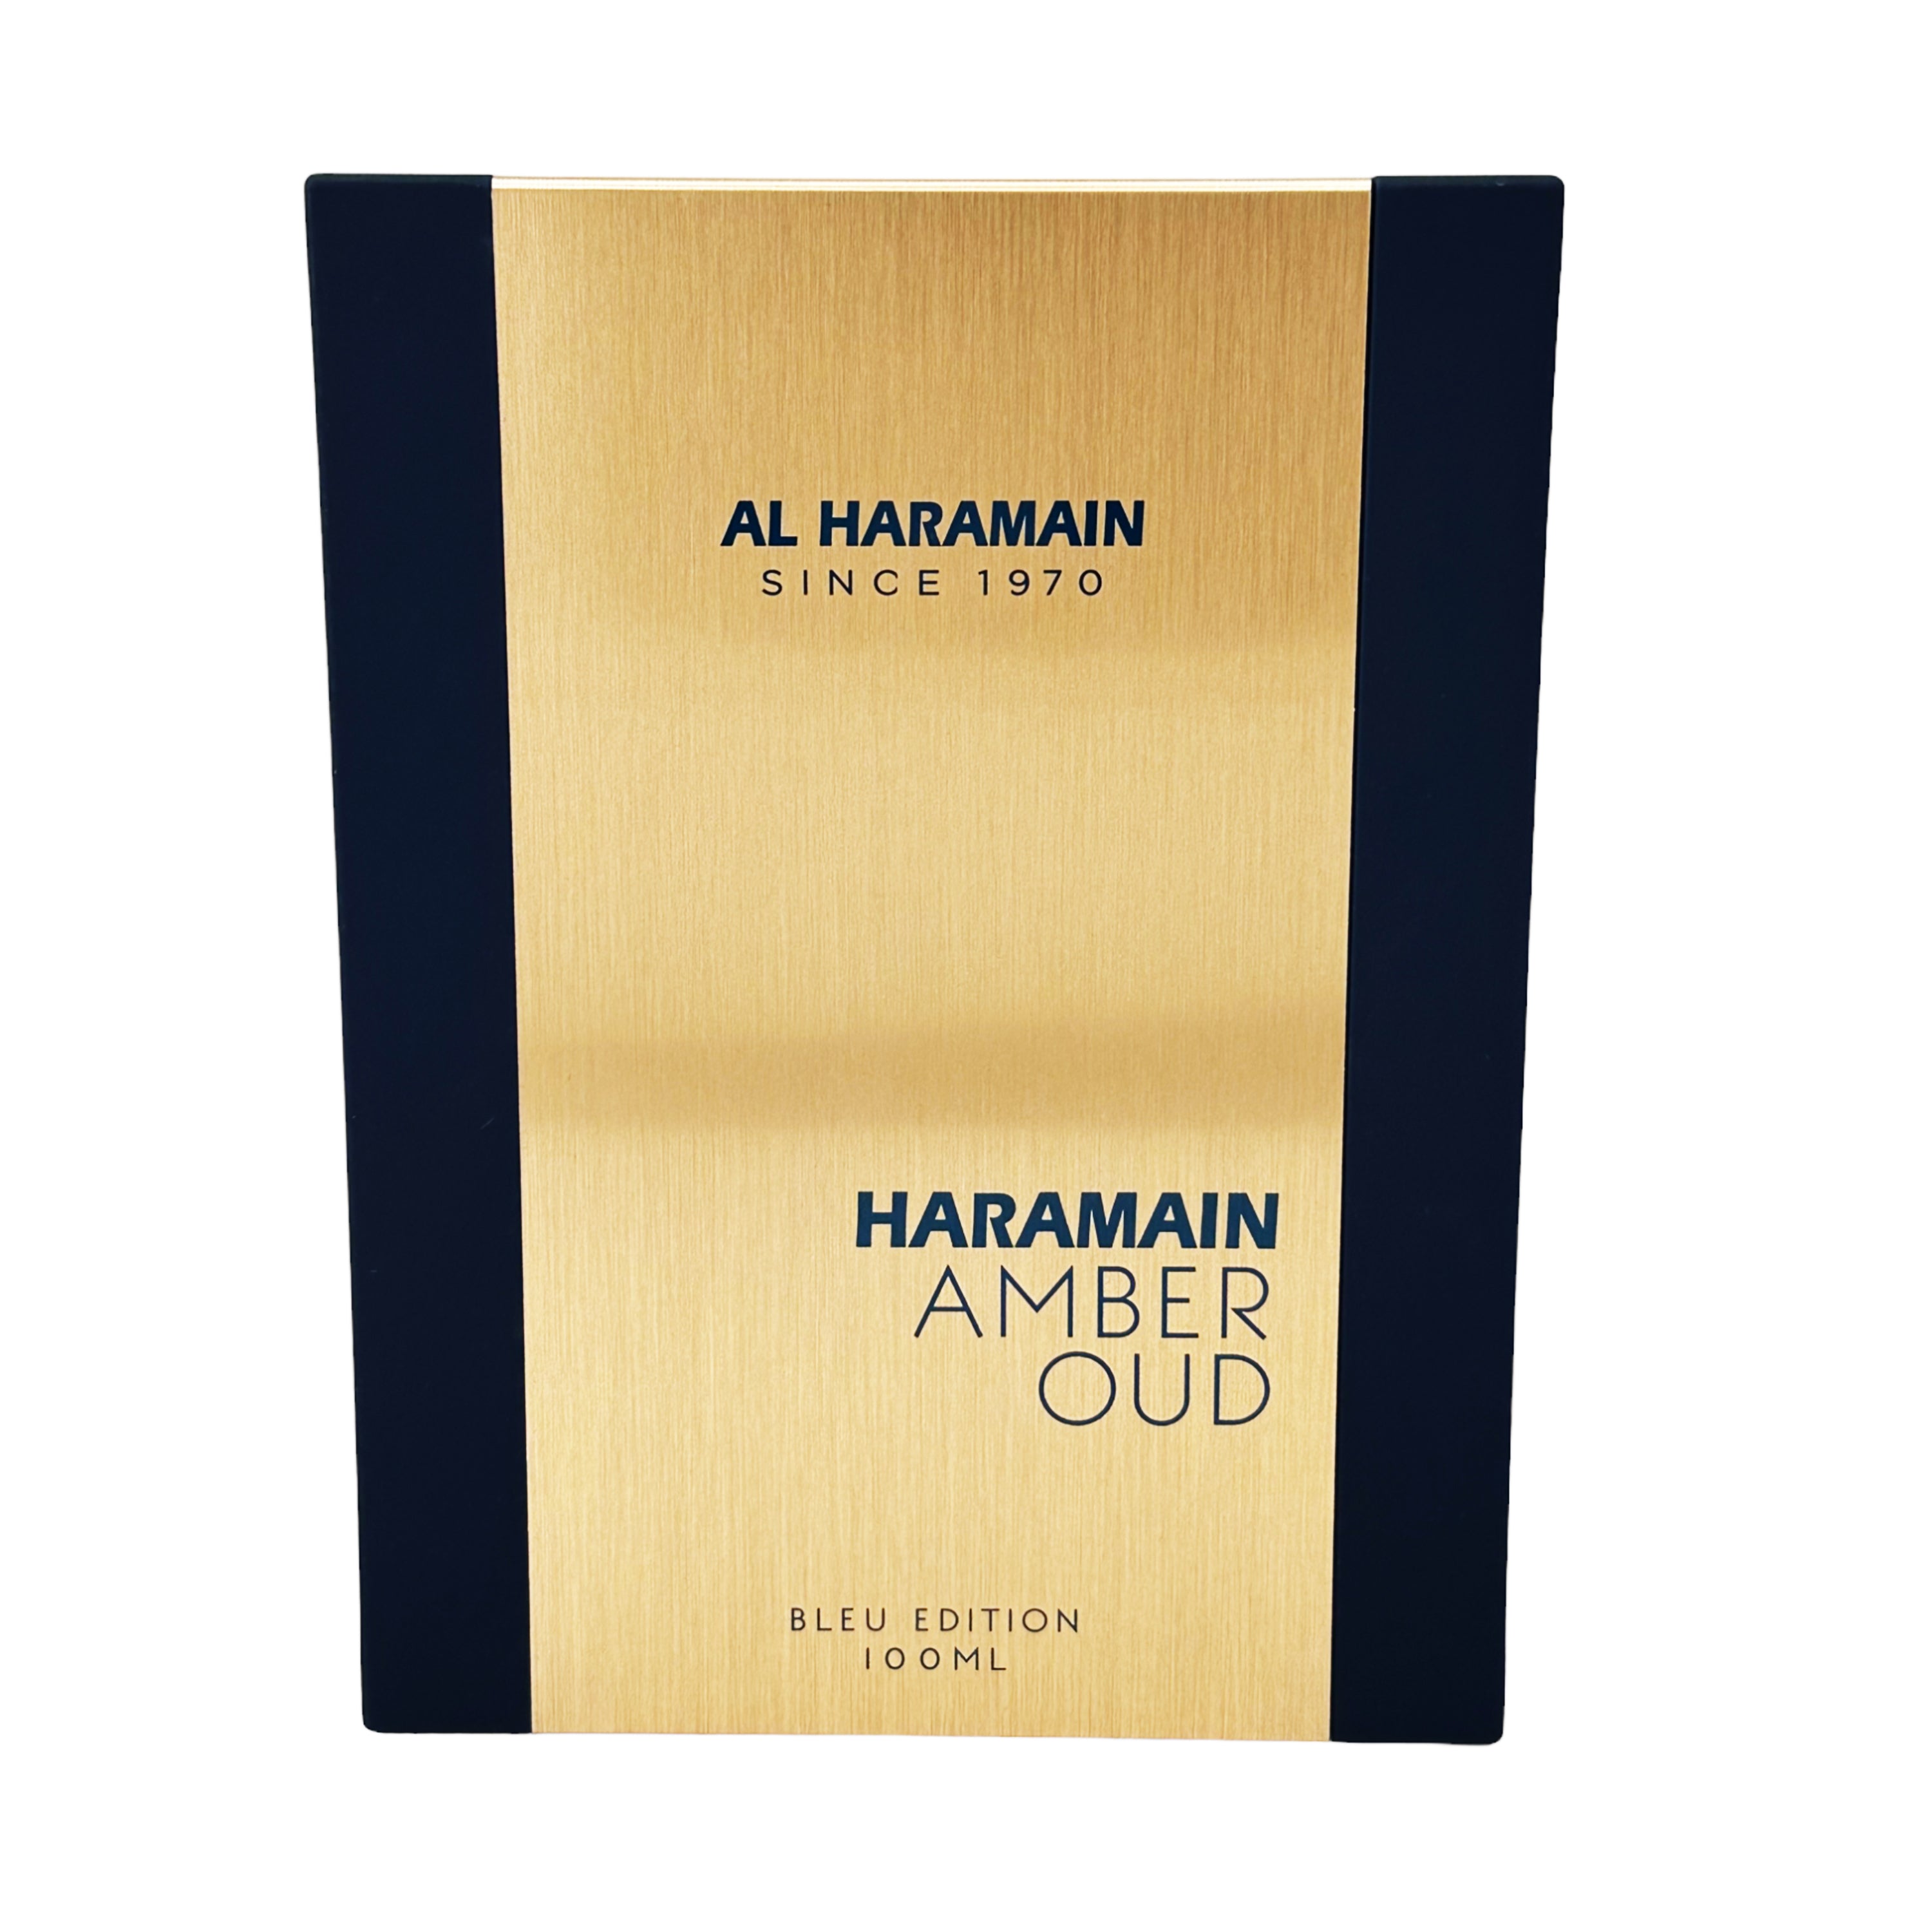 Al Haramain Amber Oud Bleu Edition Eau de Parfum for Unisex